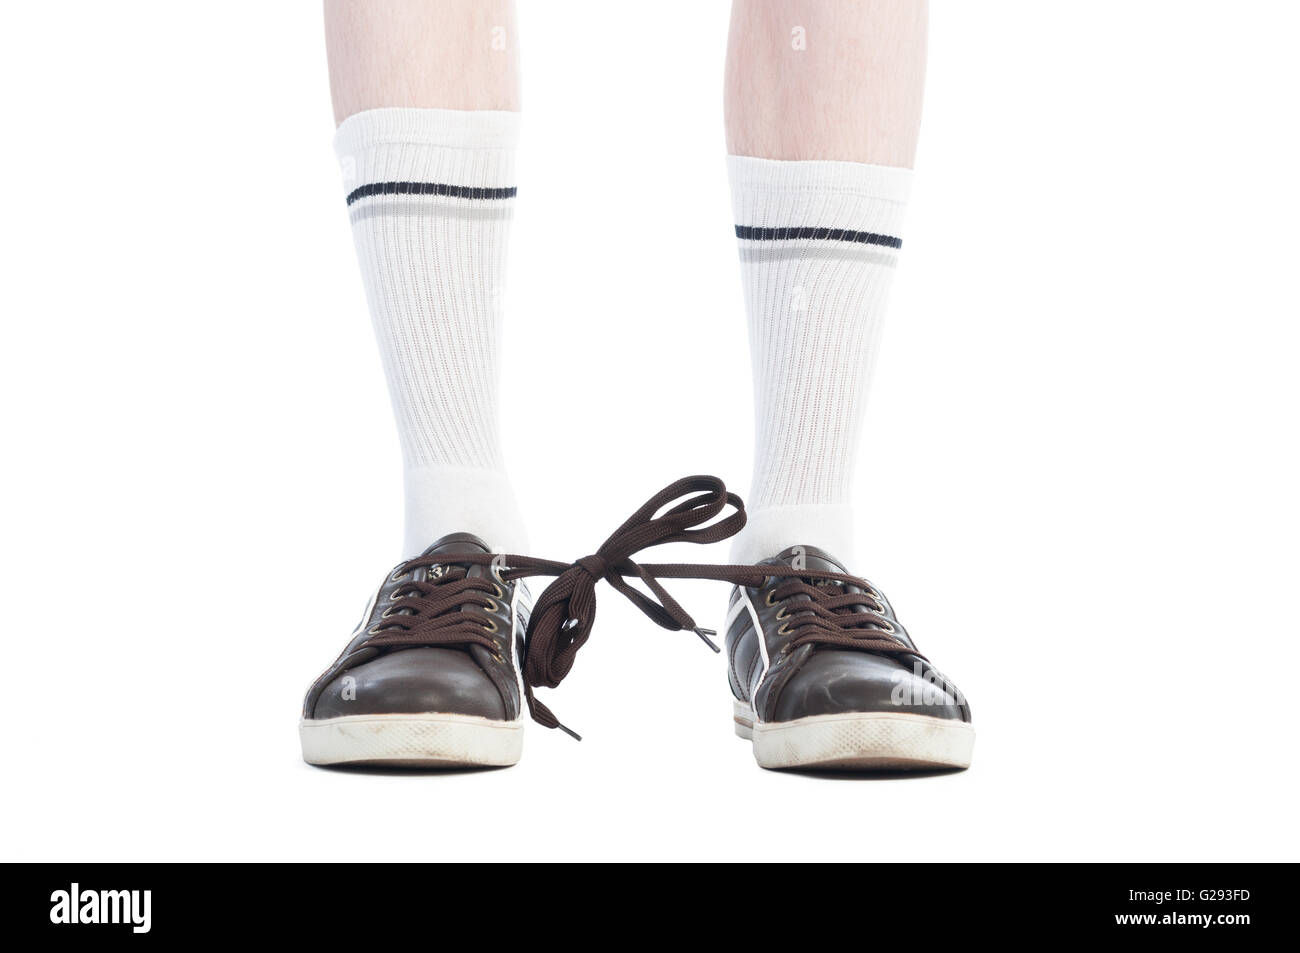 Calze lunghe e lacci delle scarpe legati insieme beffa su sfondo bianco Foto Stock